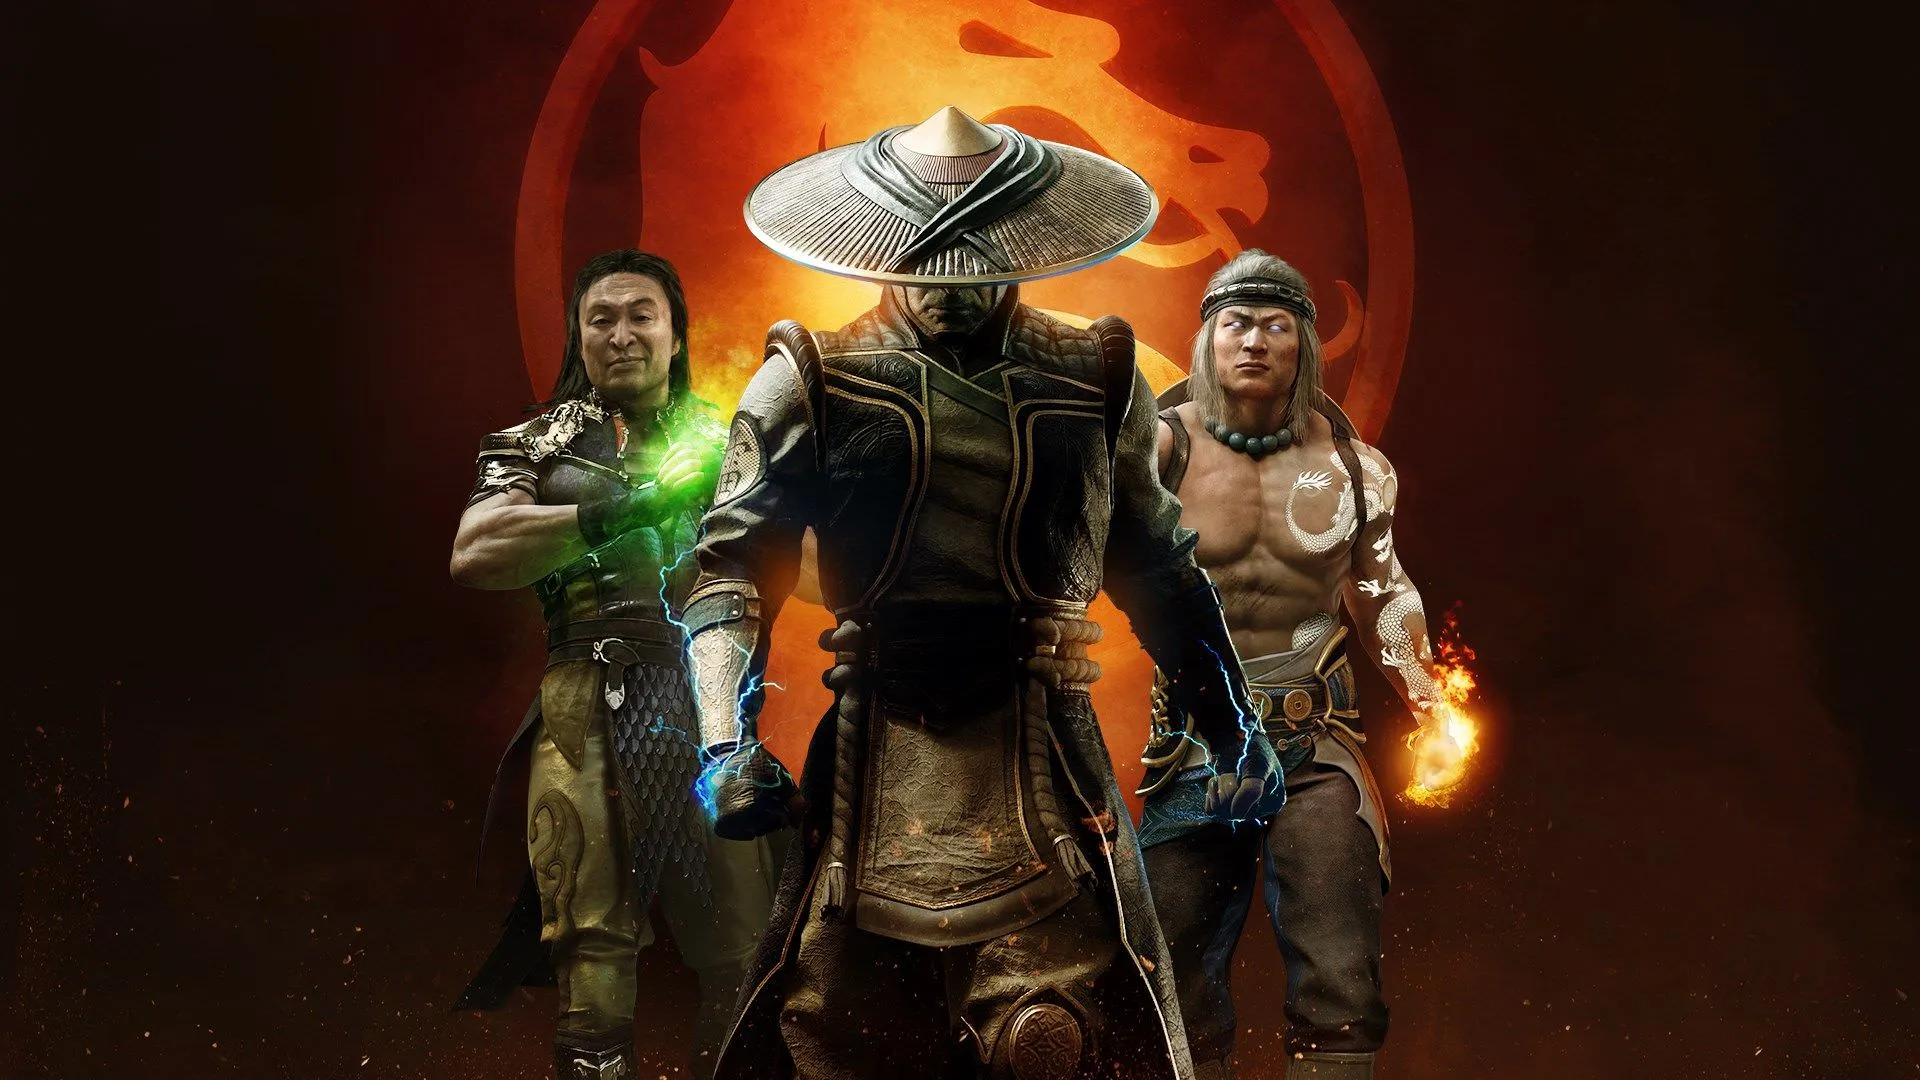 Os 10 personagens mais fortes de Mortal Kombat